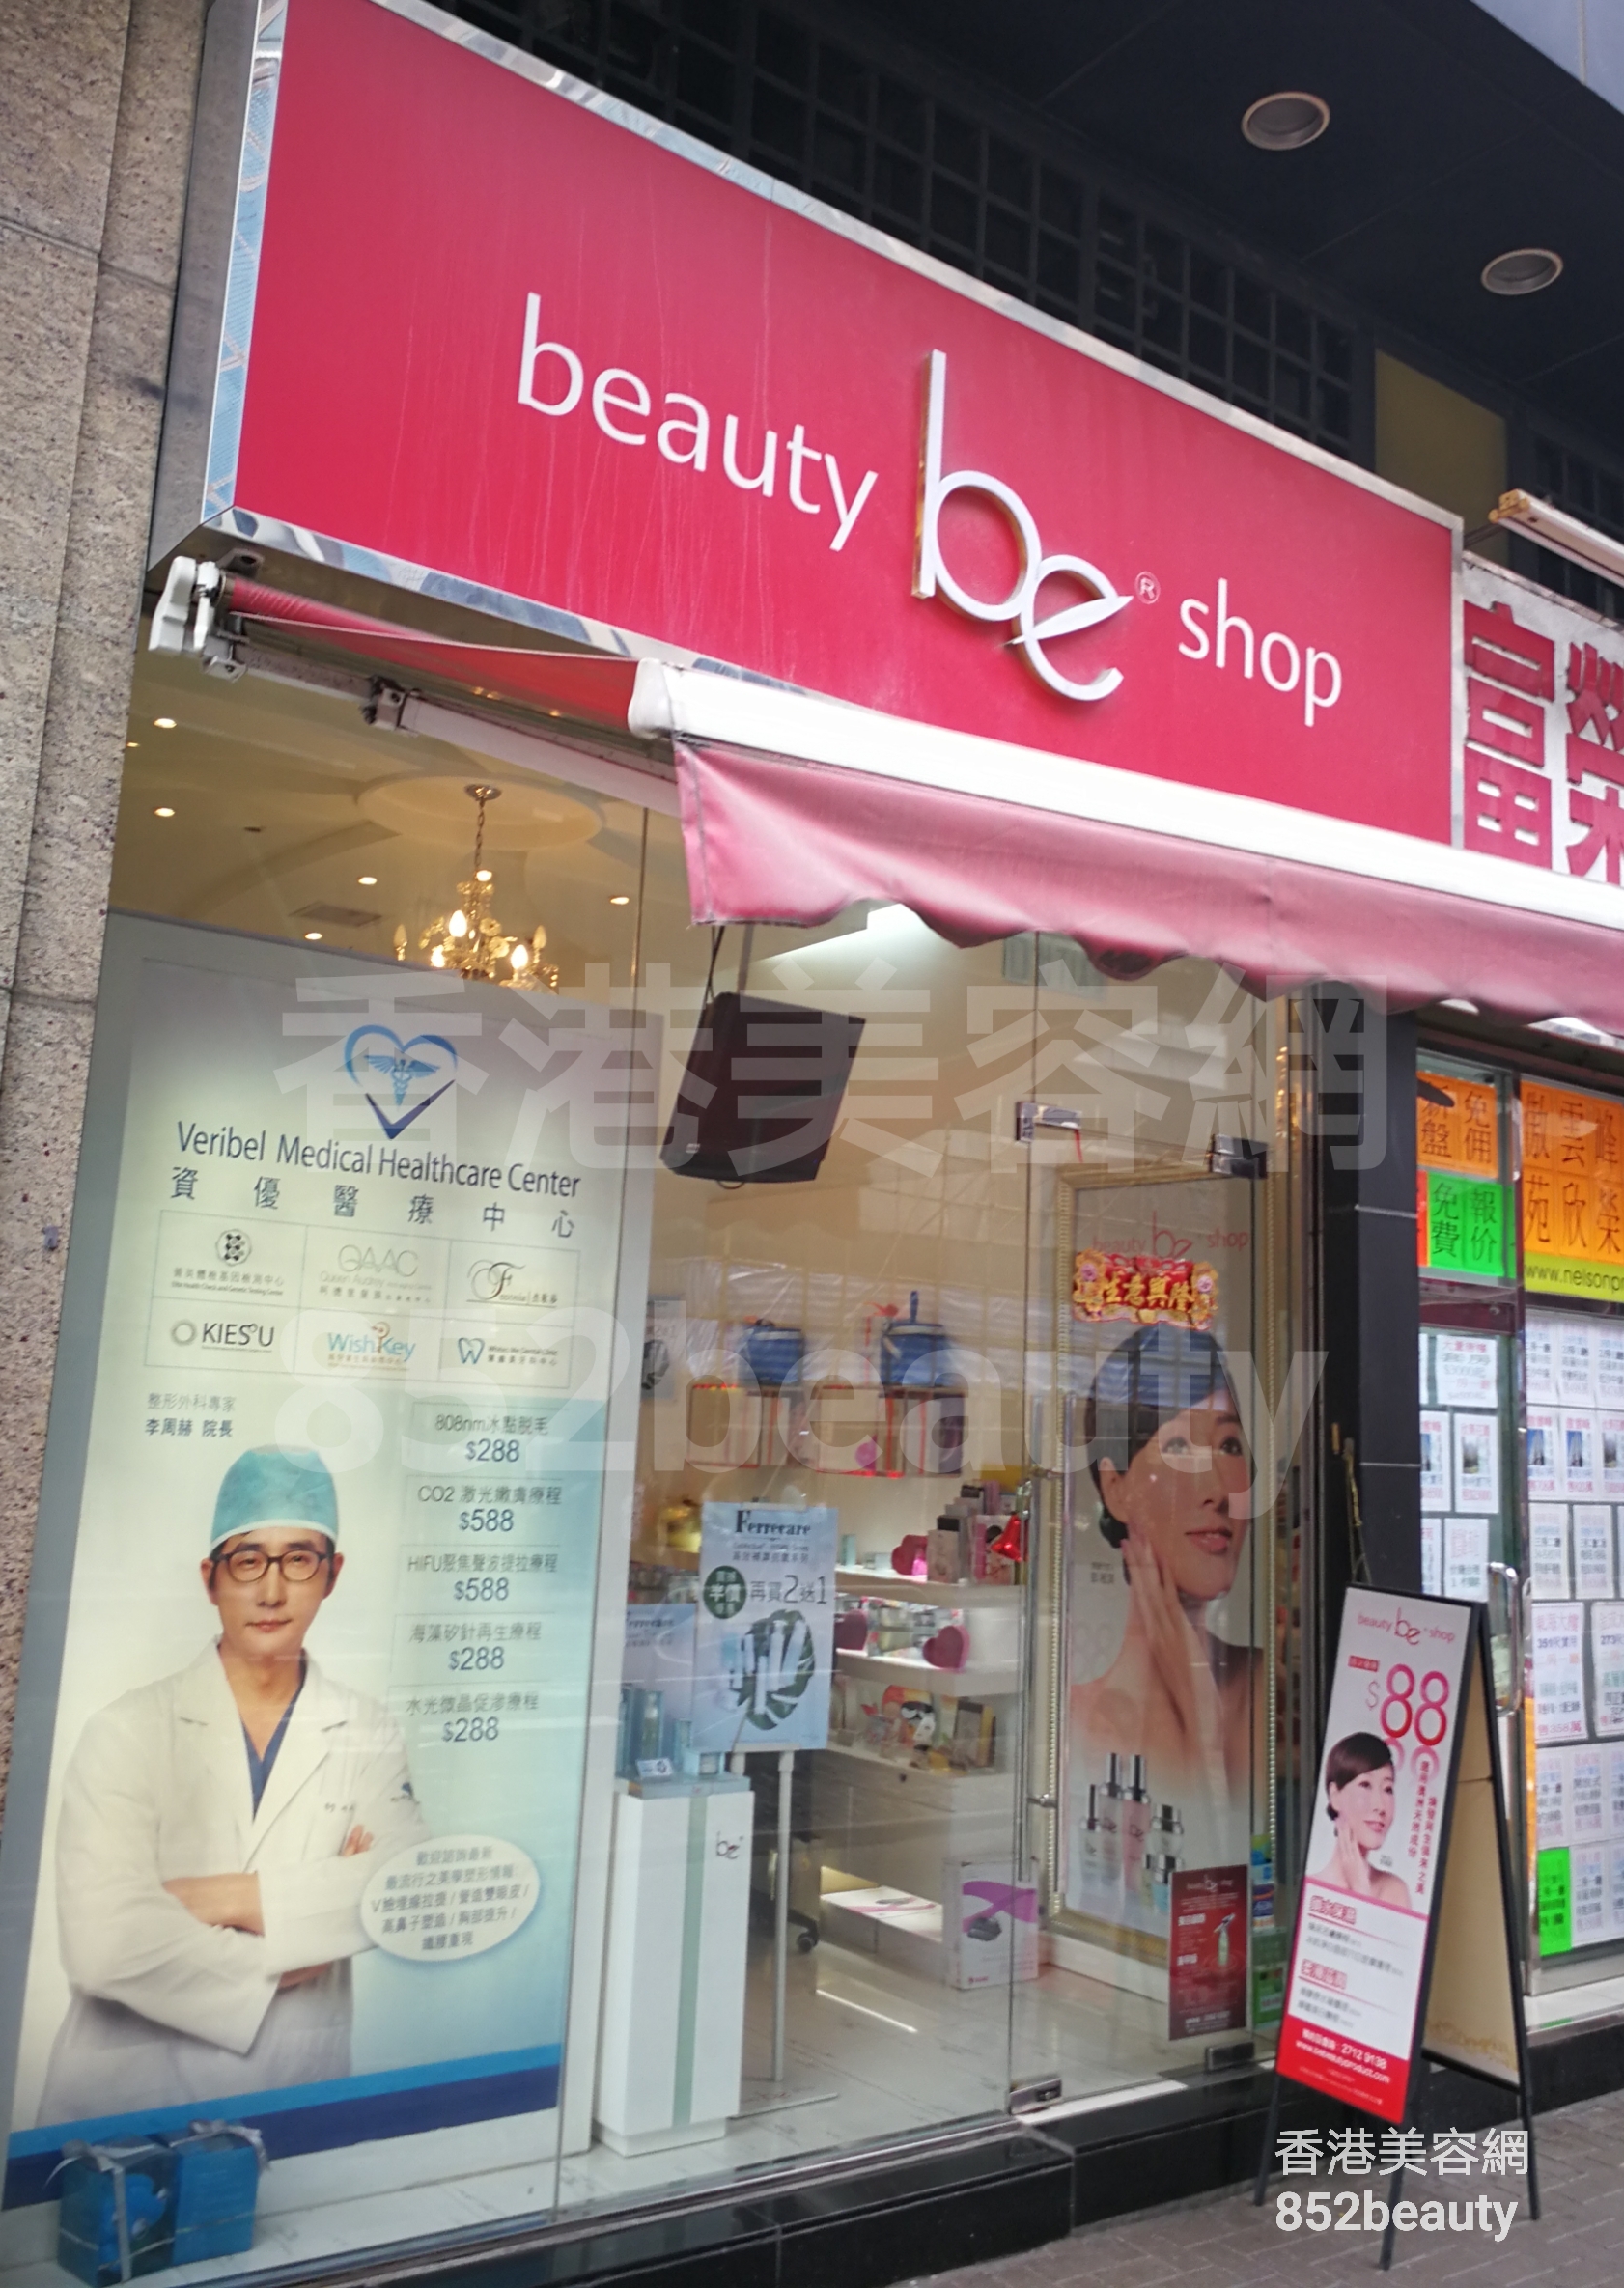 美甲: be beauty shop (金都豪庭)